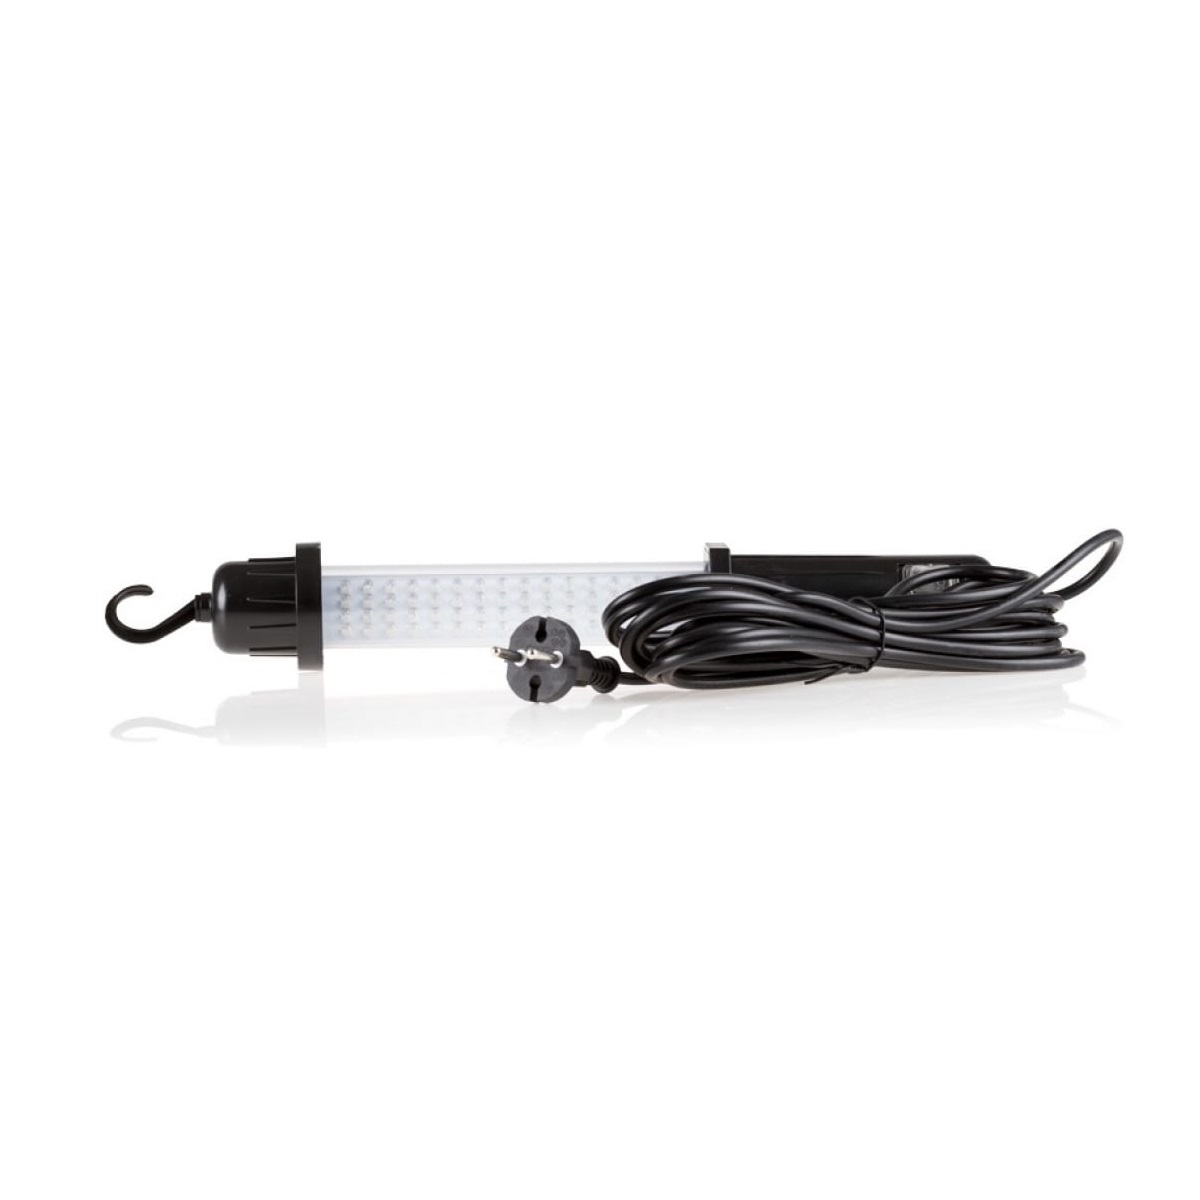 Лампа осмотровая Heyner led 220в длина кабеля 5 метров, цвет черный